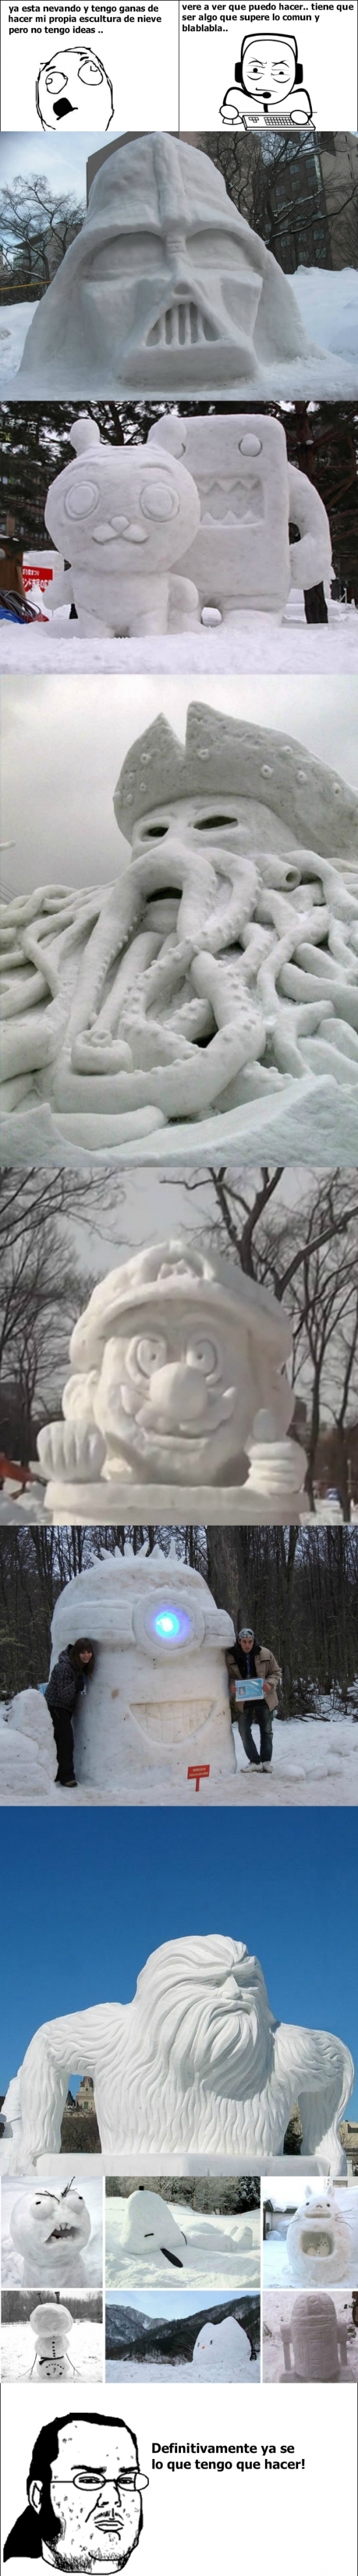 Friki - Haciendo esculturas de nieve